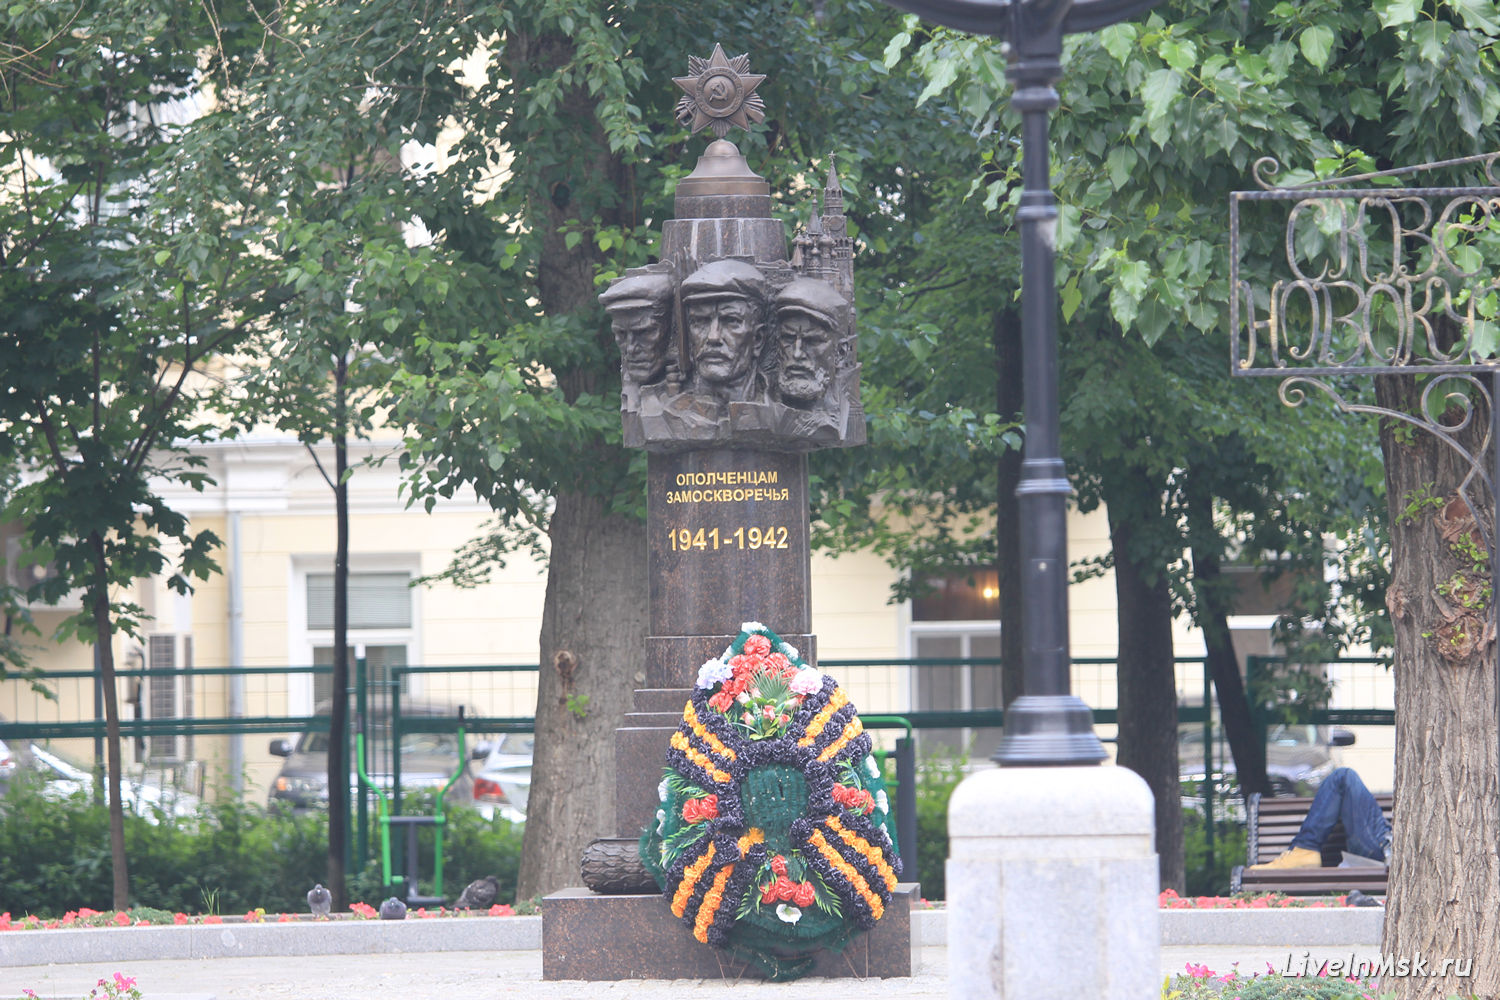 Сквер на Новокузнецкой